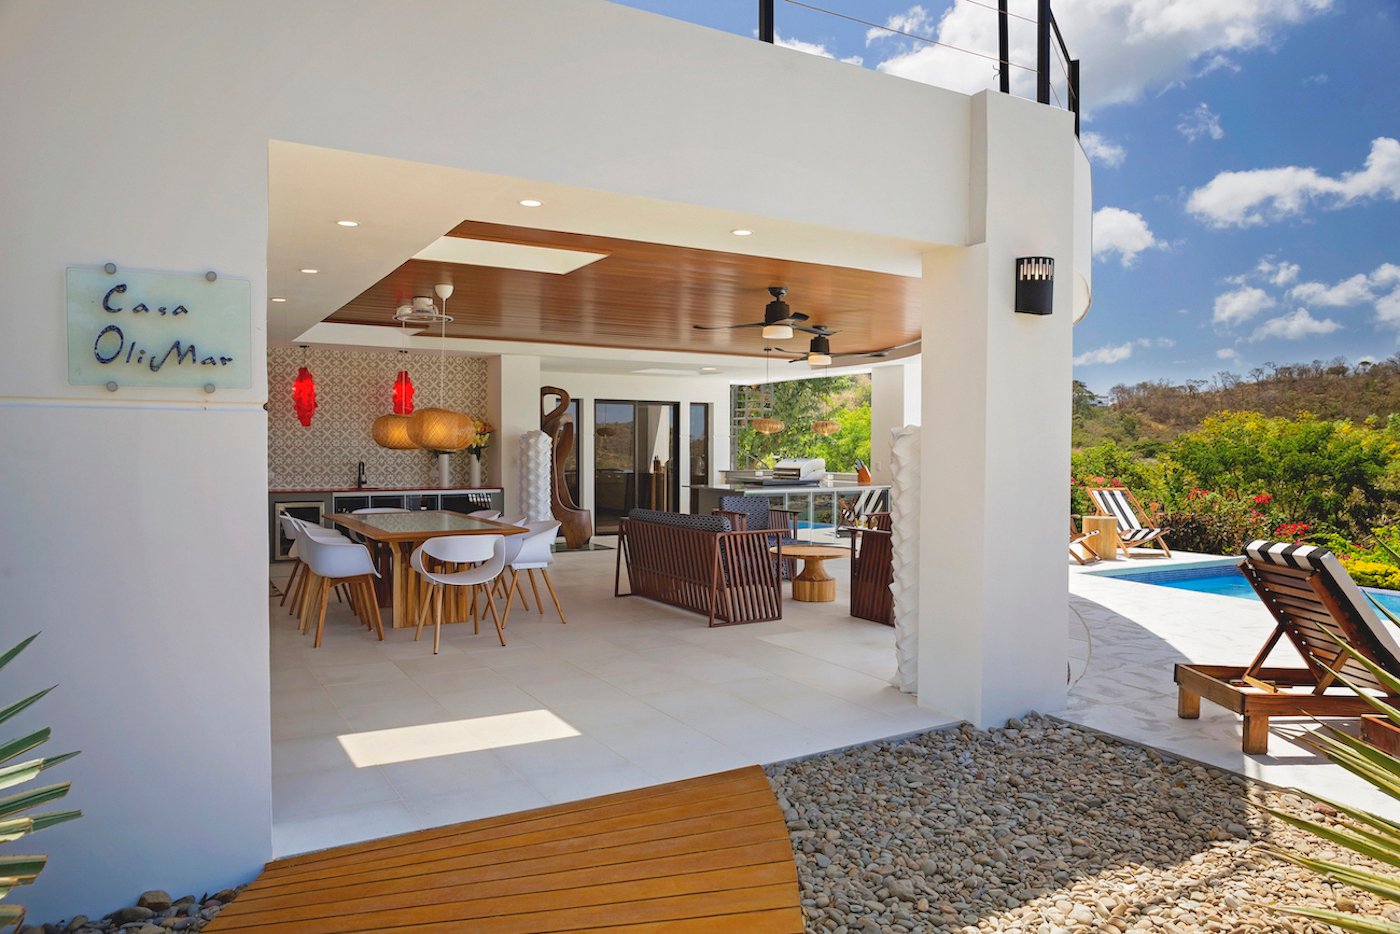 Pacific Marlin San Juan Del Sur Nicaragua Property Real Estate Investing (11).jpg